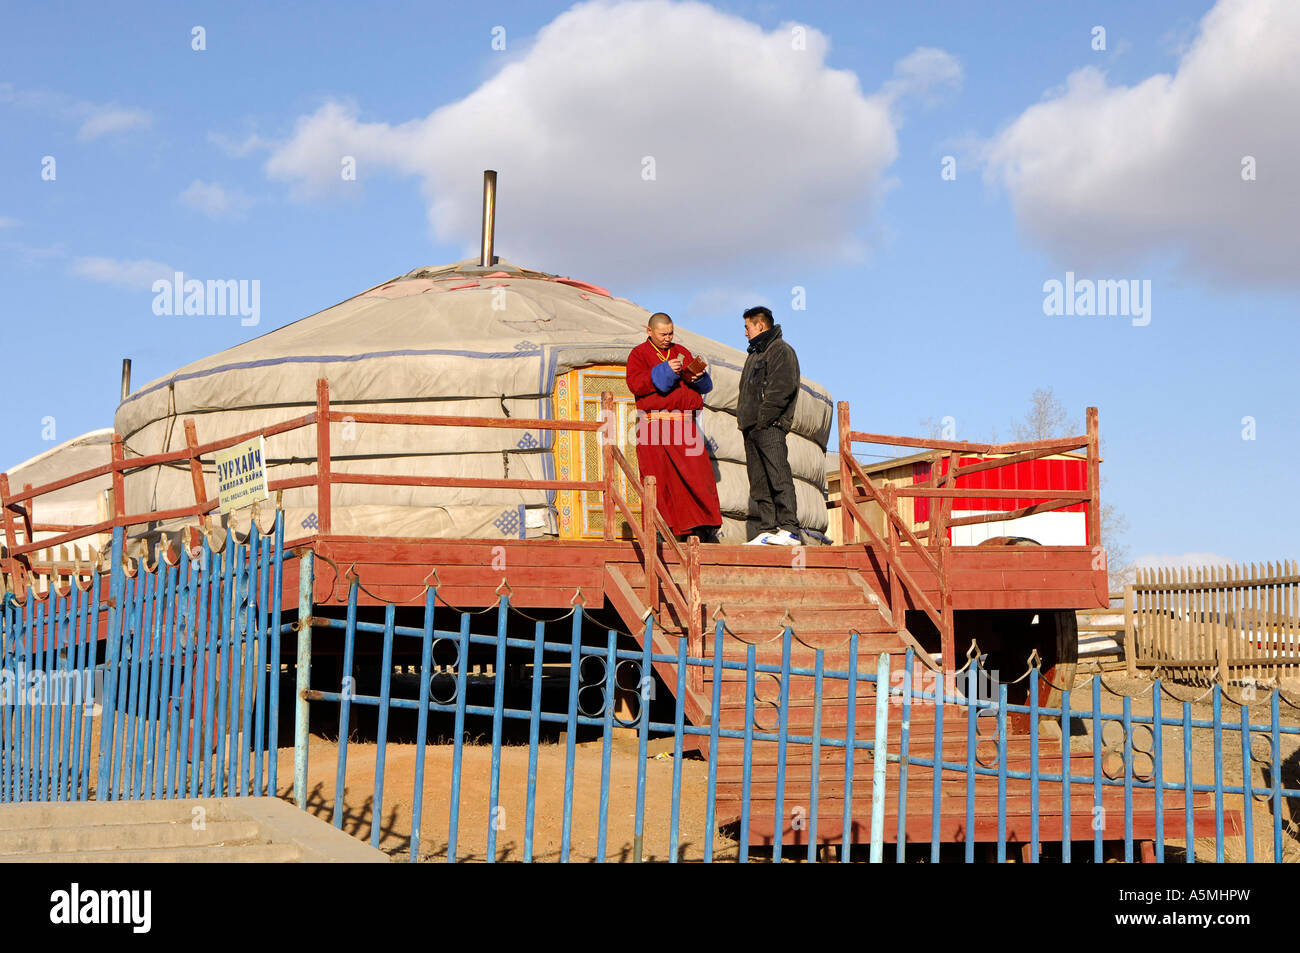 Jurte Ulan Bator Mongolei Yurt Ulaan Baatar Mongolia Asien asia Mongolei MG799 Mongolie Mongolia Stock Photo